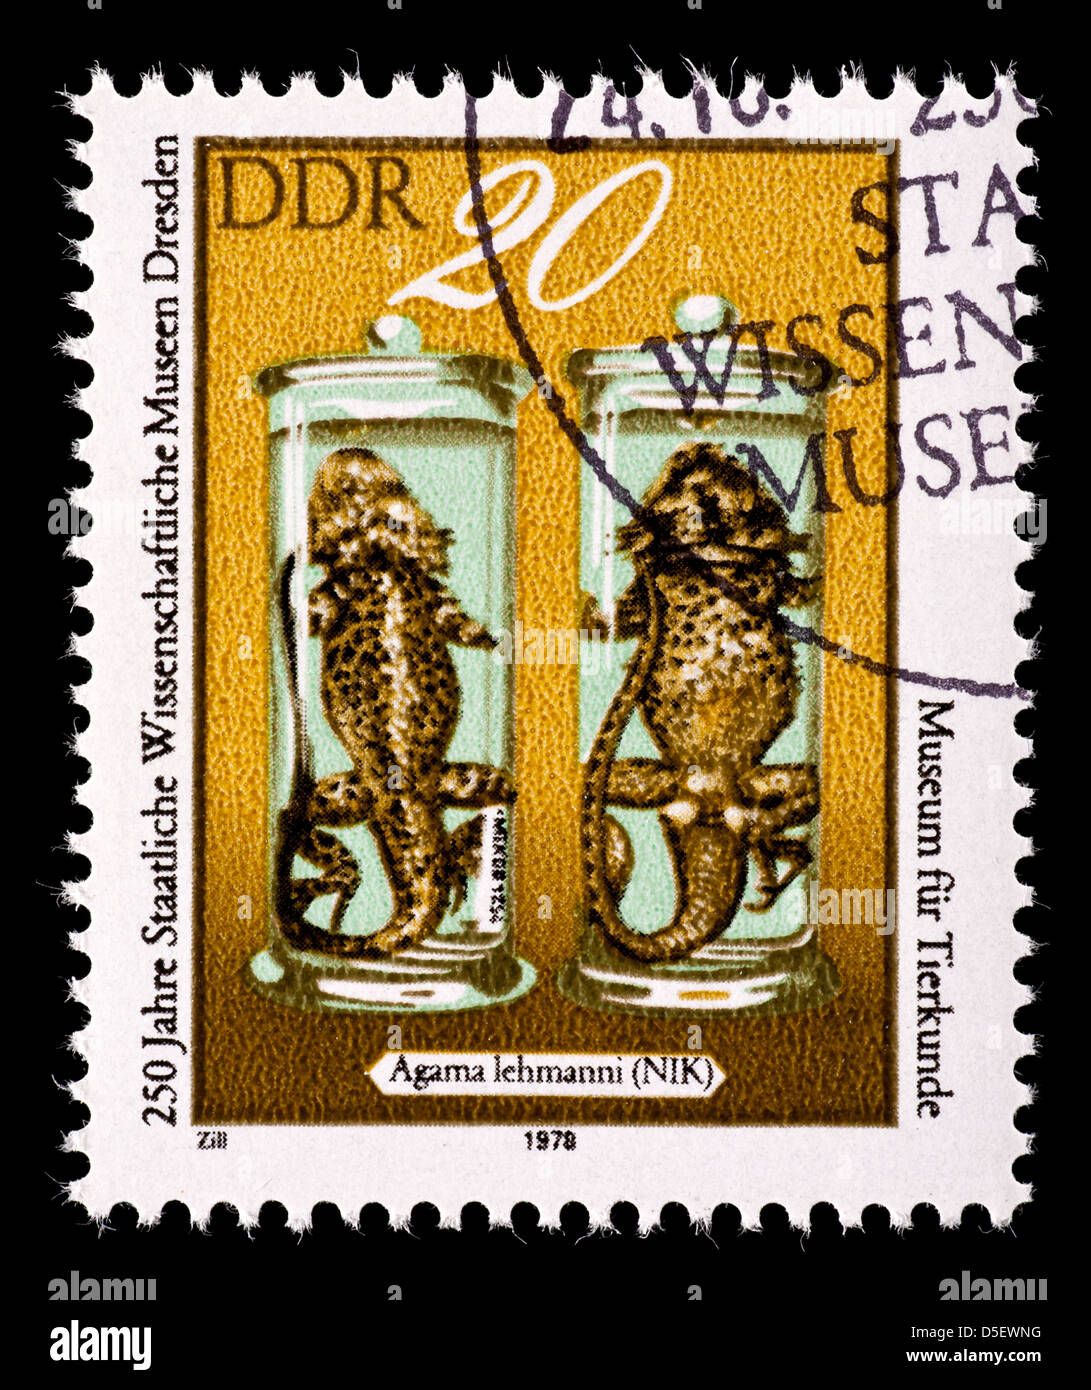 Timbre-poste de l'Allemagne de l'Est (DDR) illustrant la Lehman préservé (Agama agama) lenmanni Banque D'Images